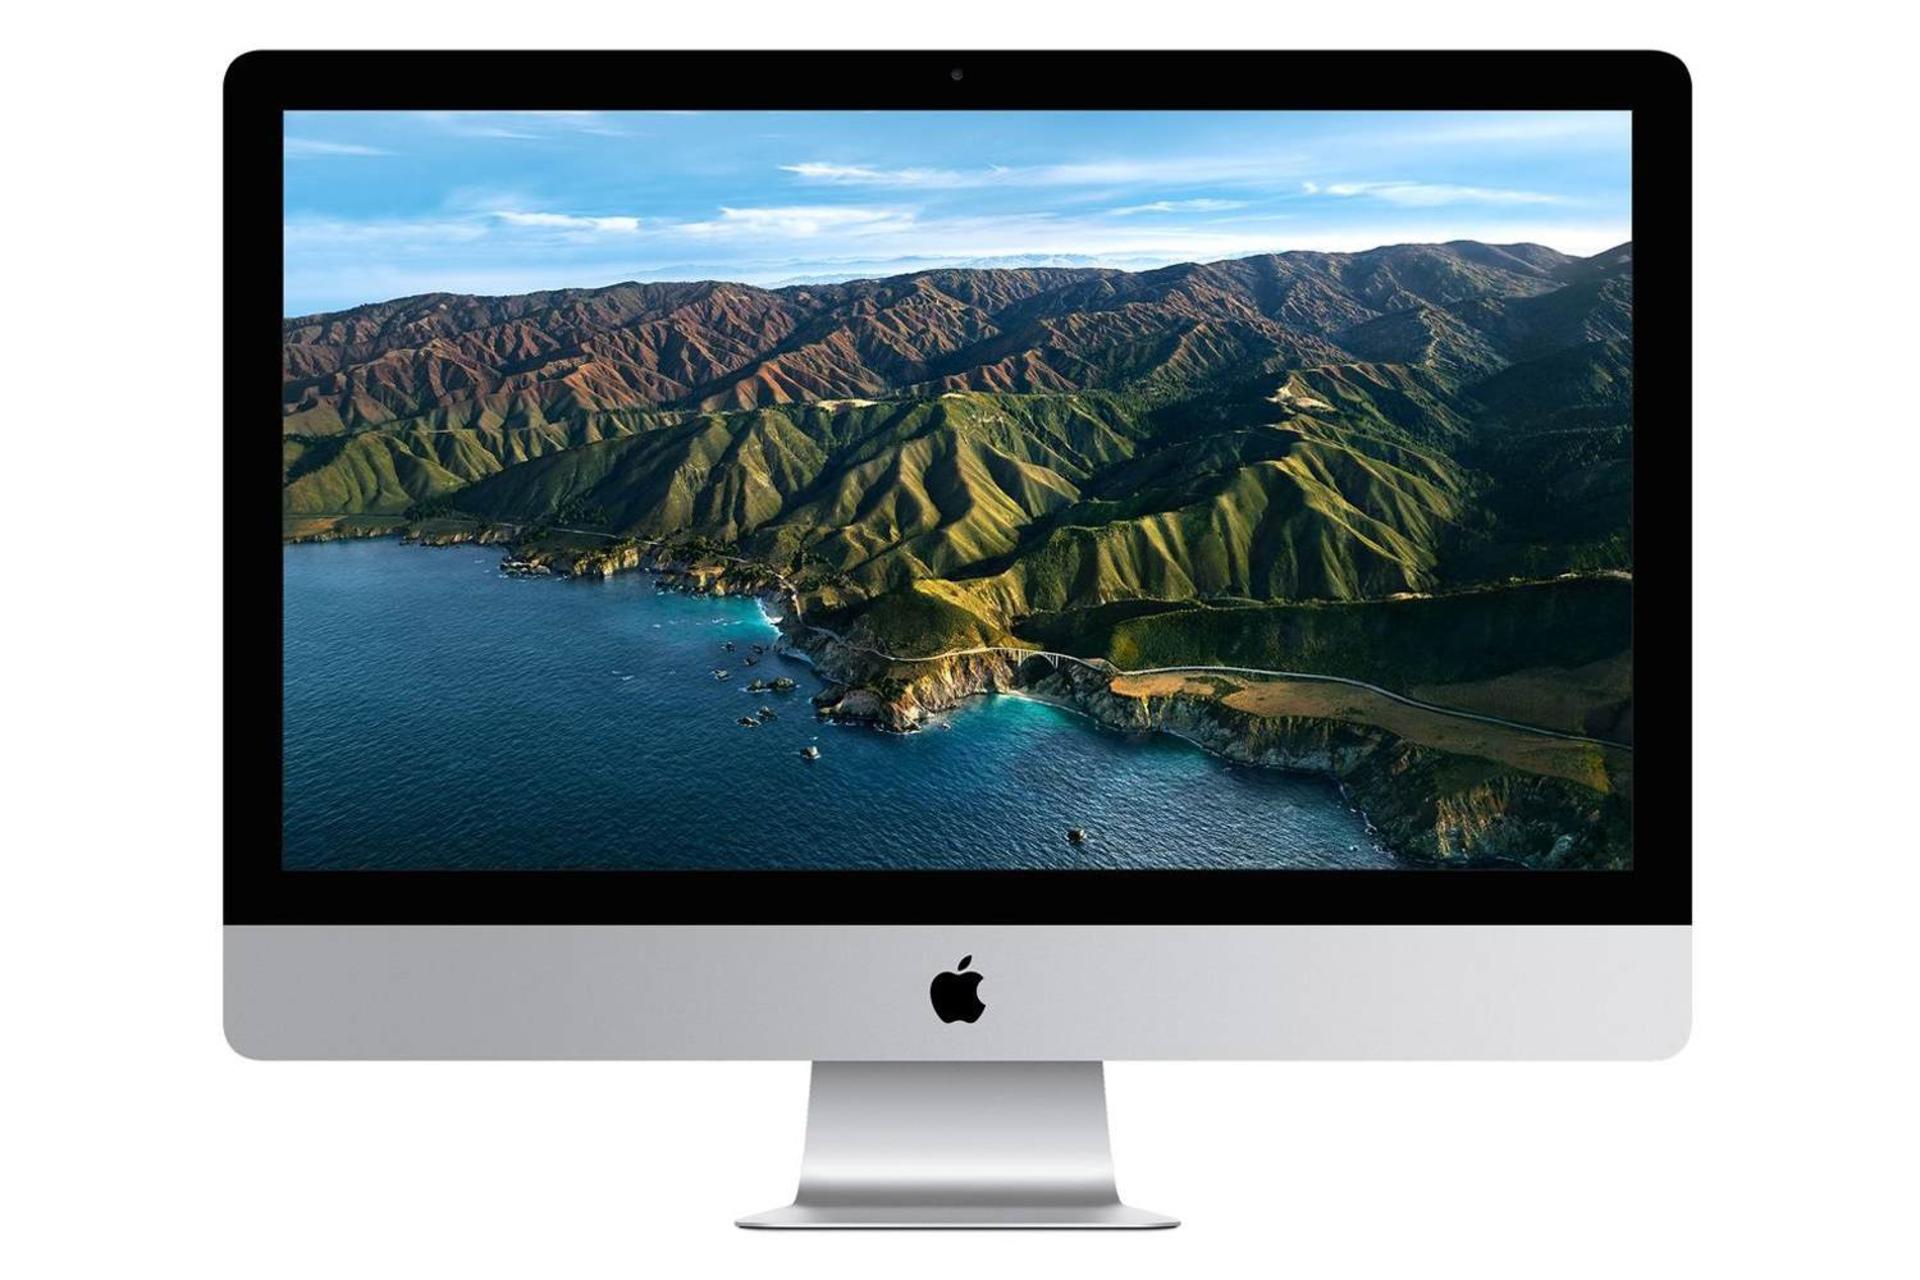 مرجع متخصصين ايران نماي روبرو كامپيوتر آل اين وان All in One Apple iMac 2020 27 inch